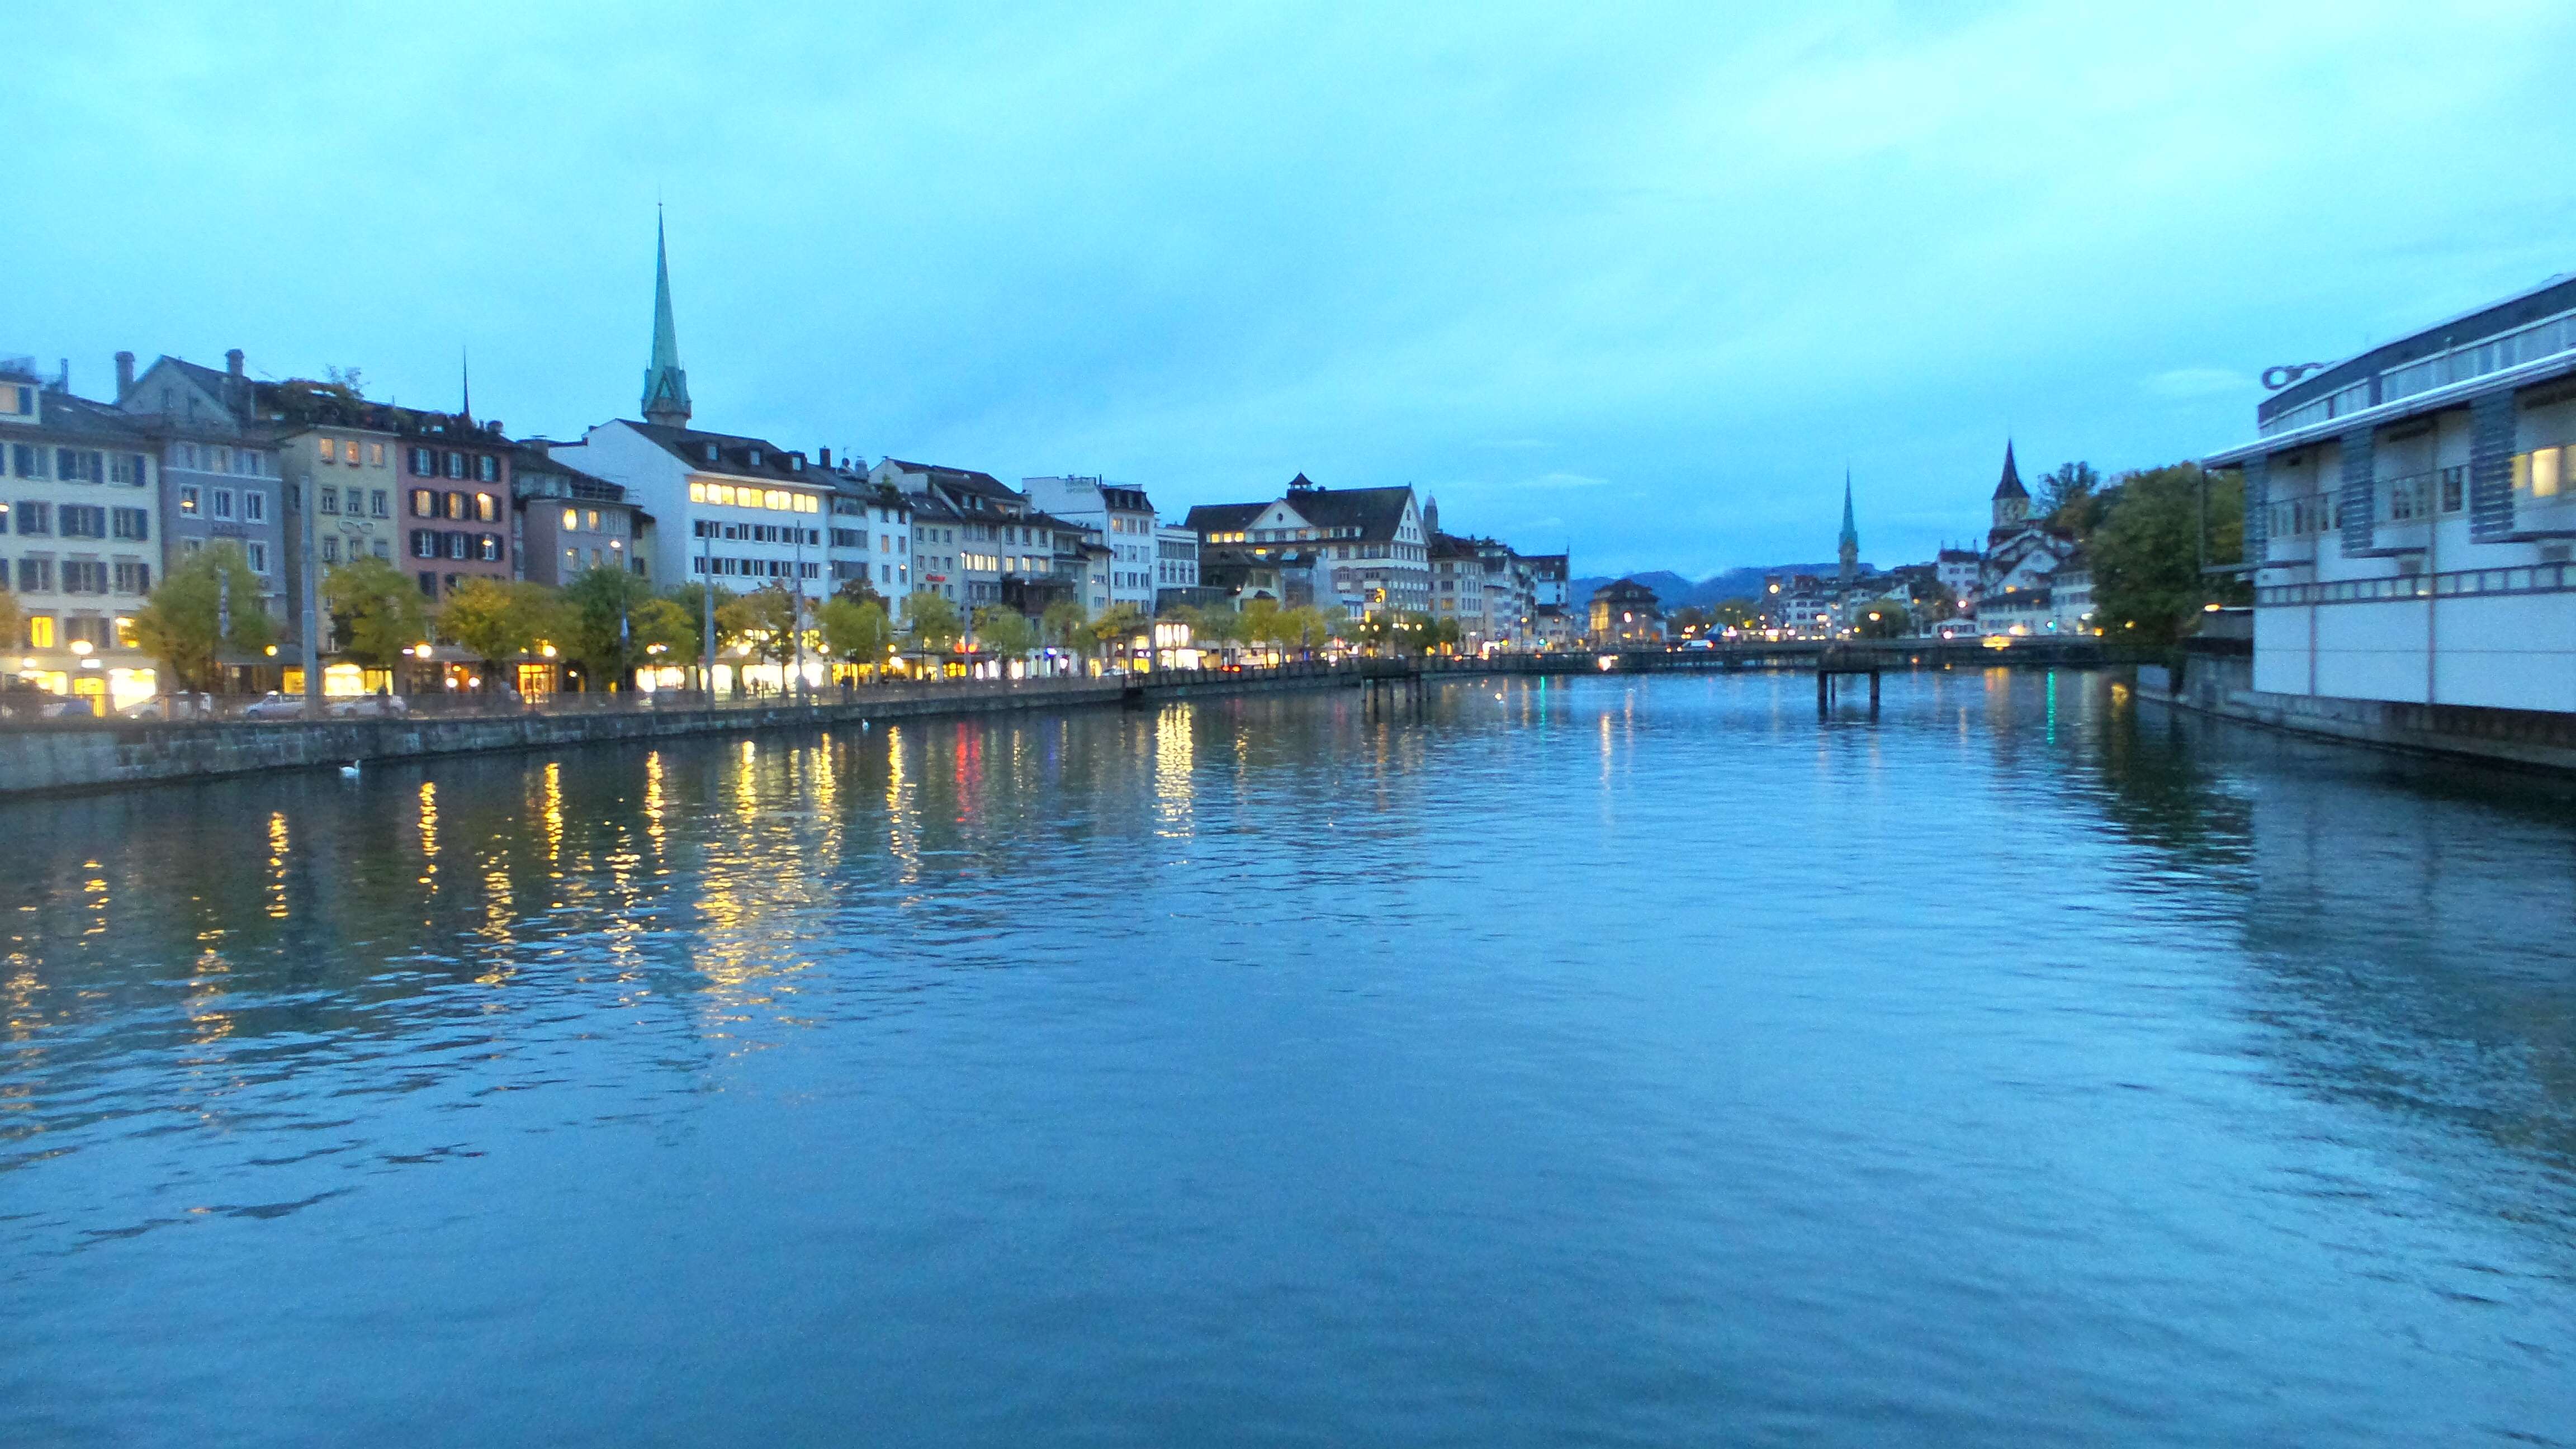 The beautiful Rhine at night.